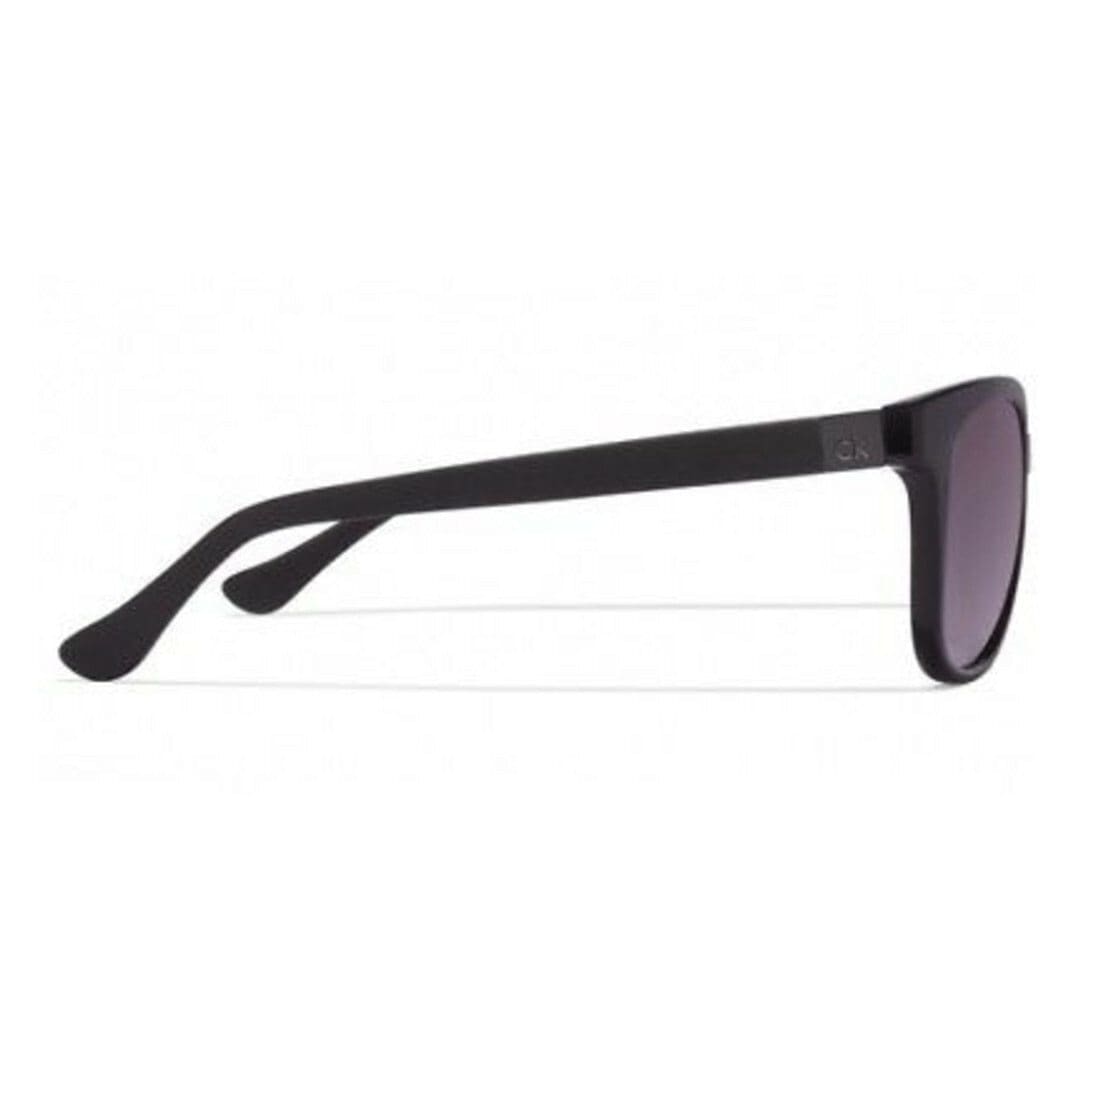 Calvin Klein CK3176S-001 CK Suns Shiny Black Grey Lenses Women's Sunglasses Frames 750779086339